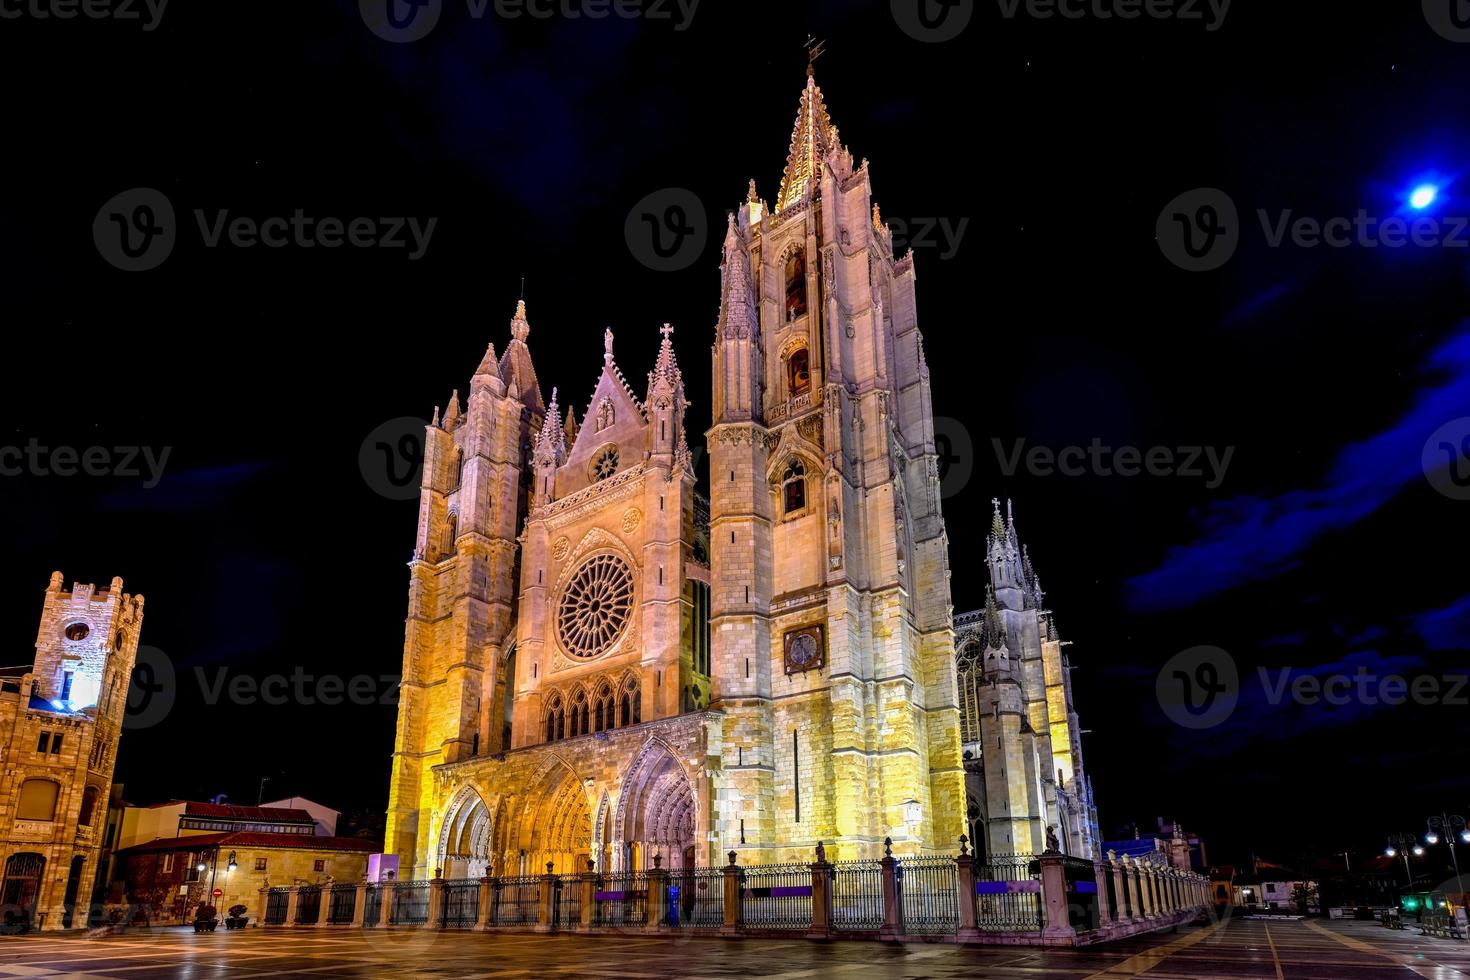 principale gothique façade de leon cathédrale dans le soir, Espagne photo